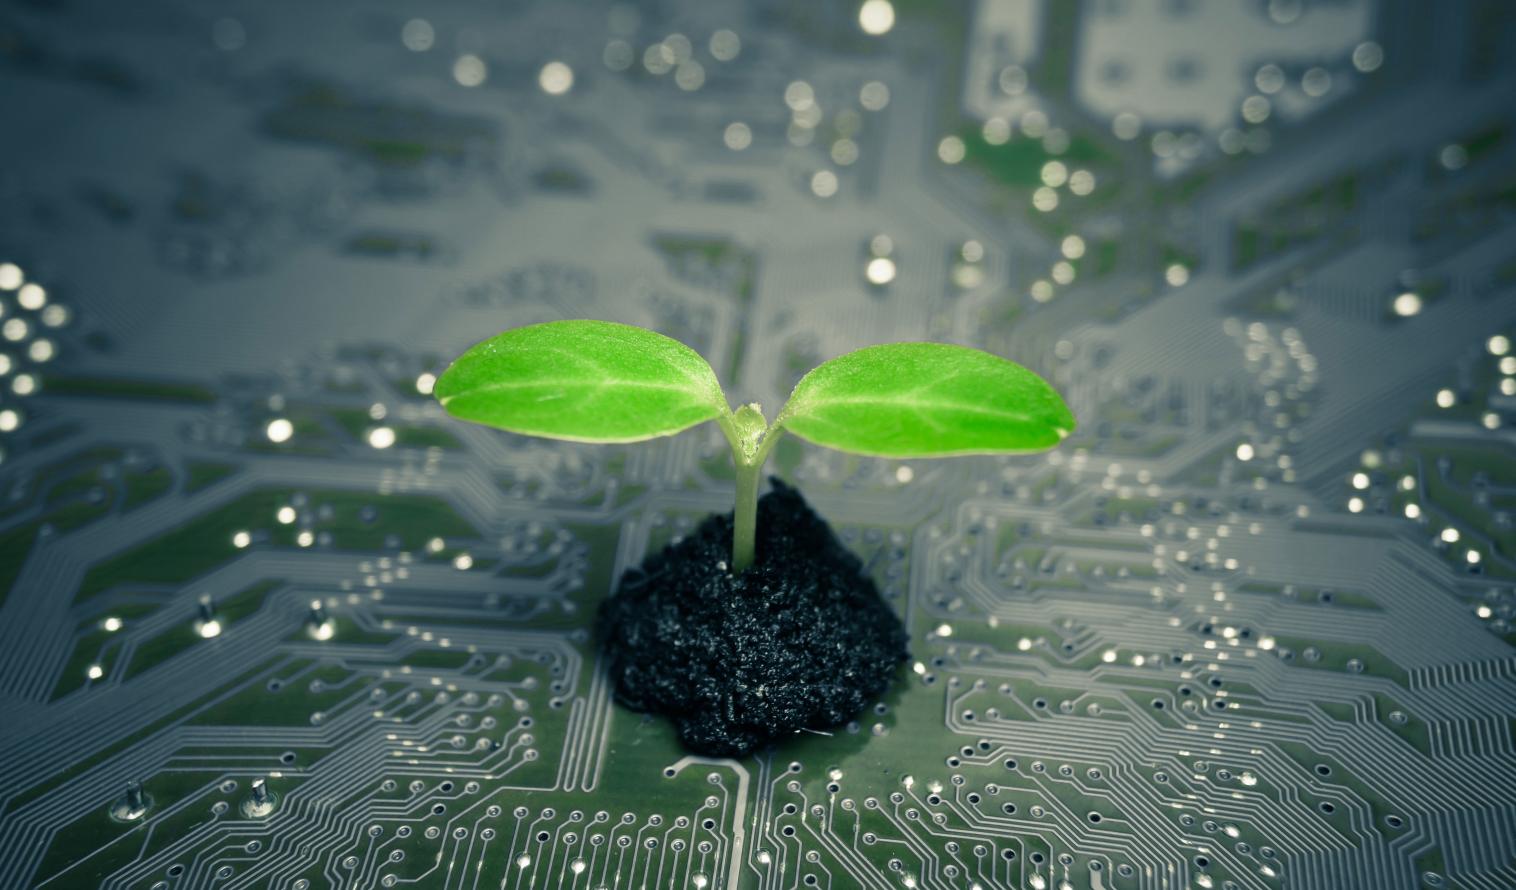 Pflanze wächst auf einer Computerplatine